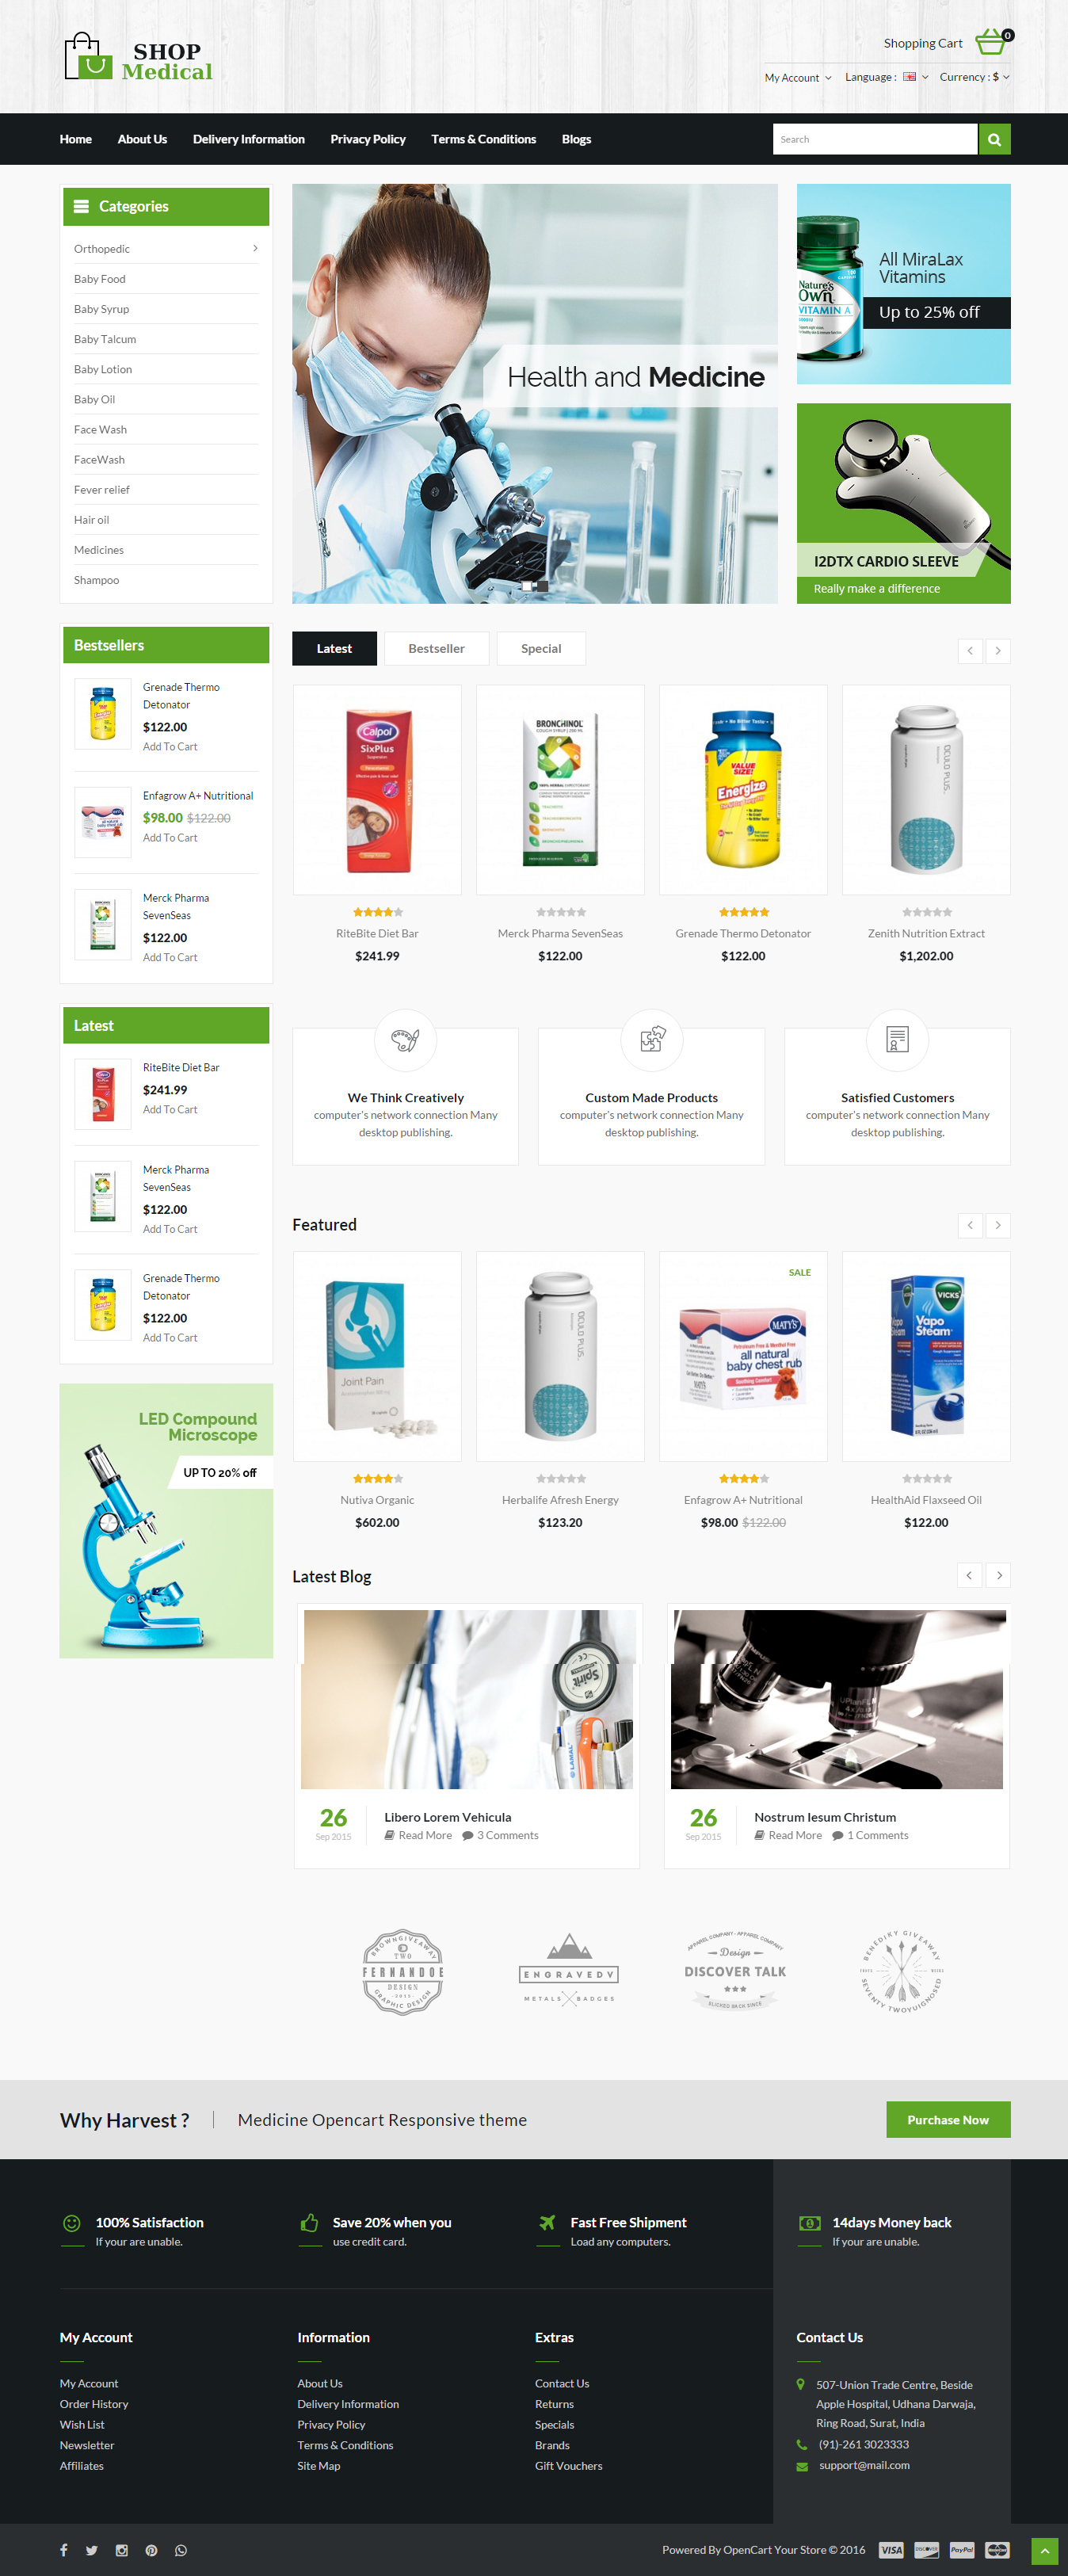 Medical Shop - продажа медицинского оборудования и медикаментов